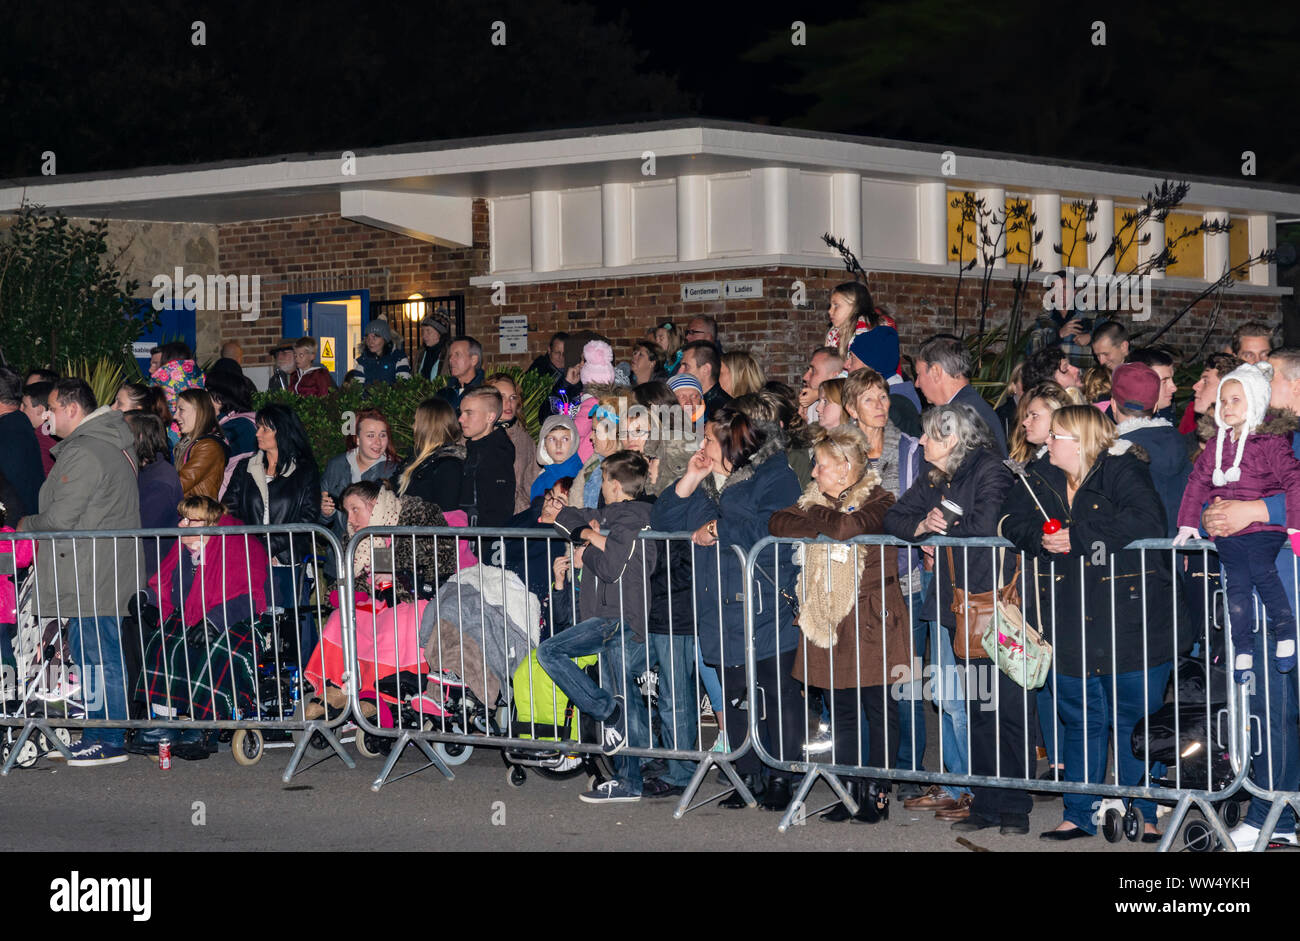 La folla di persone in piedi in attesa dietro barriere guardando una processione mentre a Guy Fawkes evento in Inghilterra, Regno Unito. Foto Stock